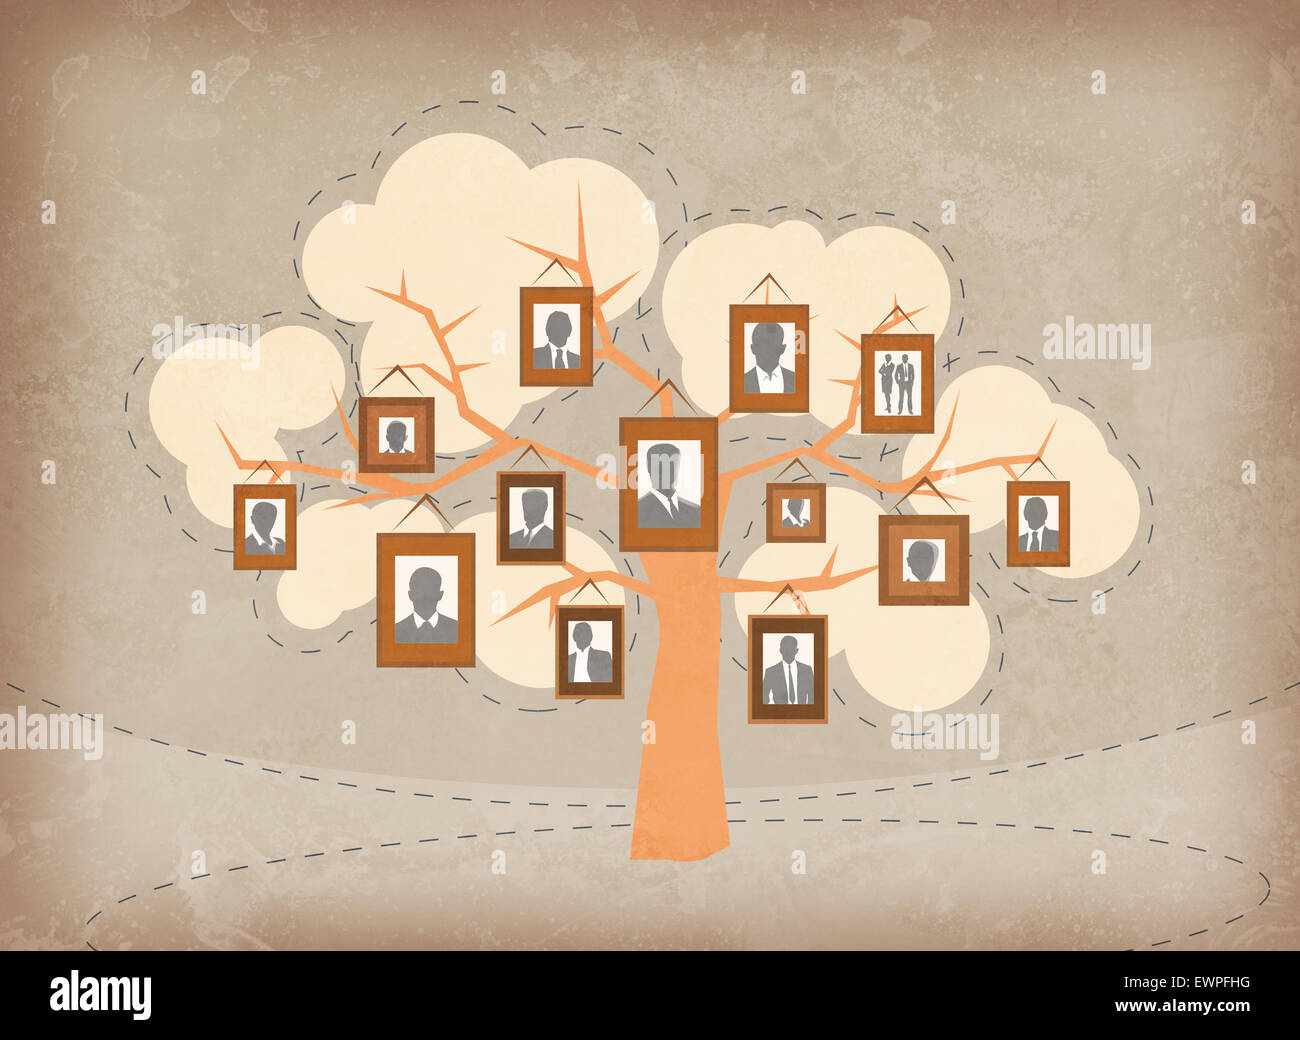 Image d'illustration de gens d'affaires attachés à des branches d'arbre qui représente la croissance et l'équipe Banque D'Images